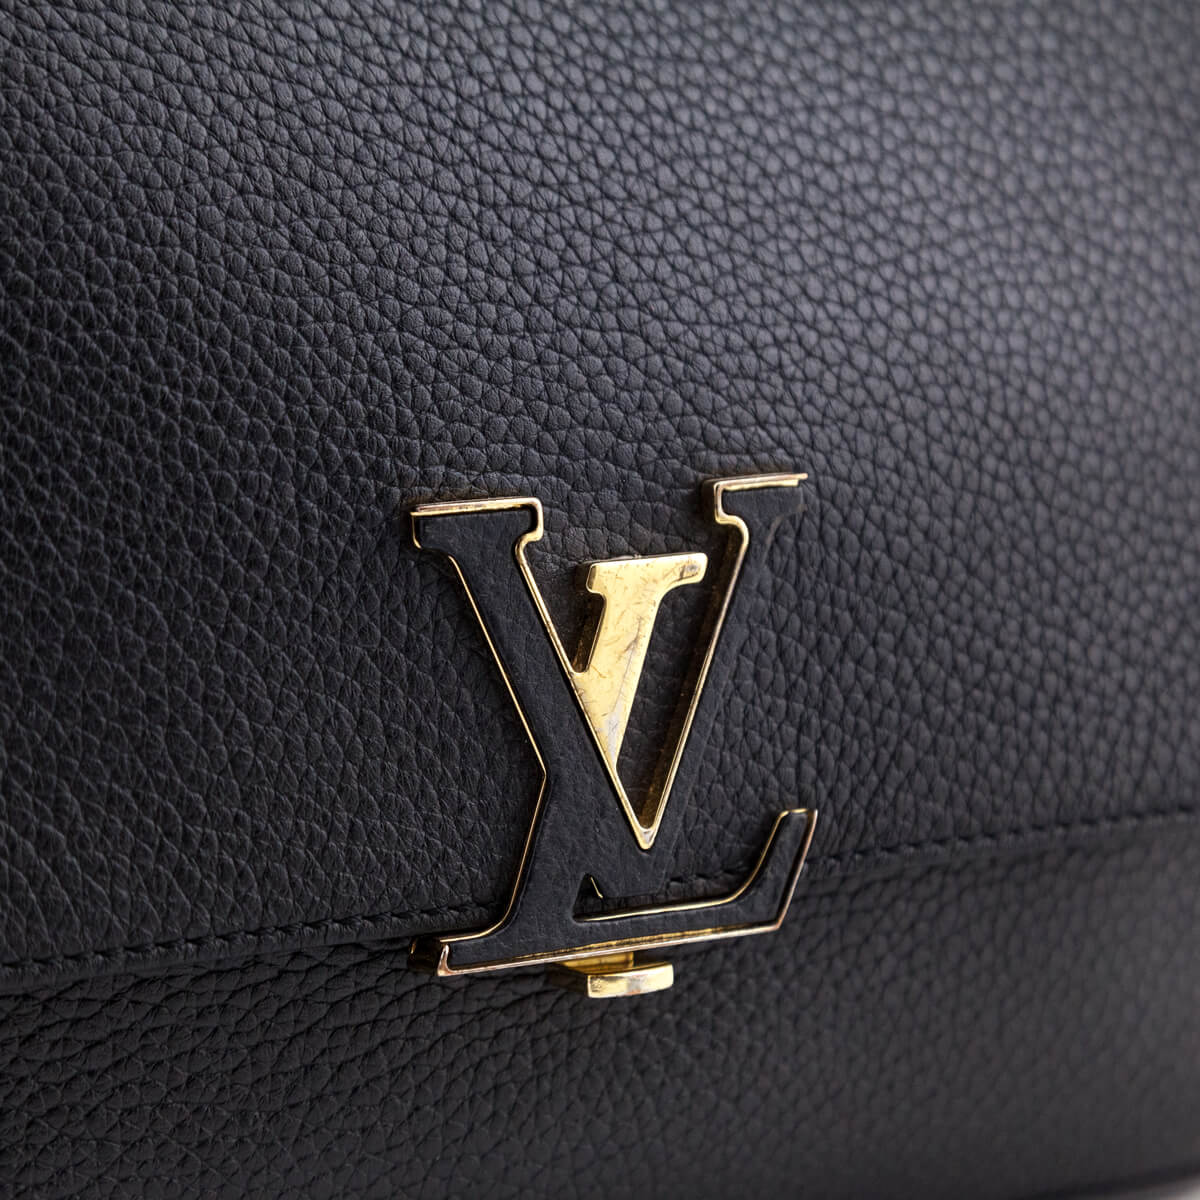 Louis Vuitton - Volta Taurillon Leather Bag Noir